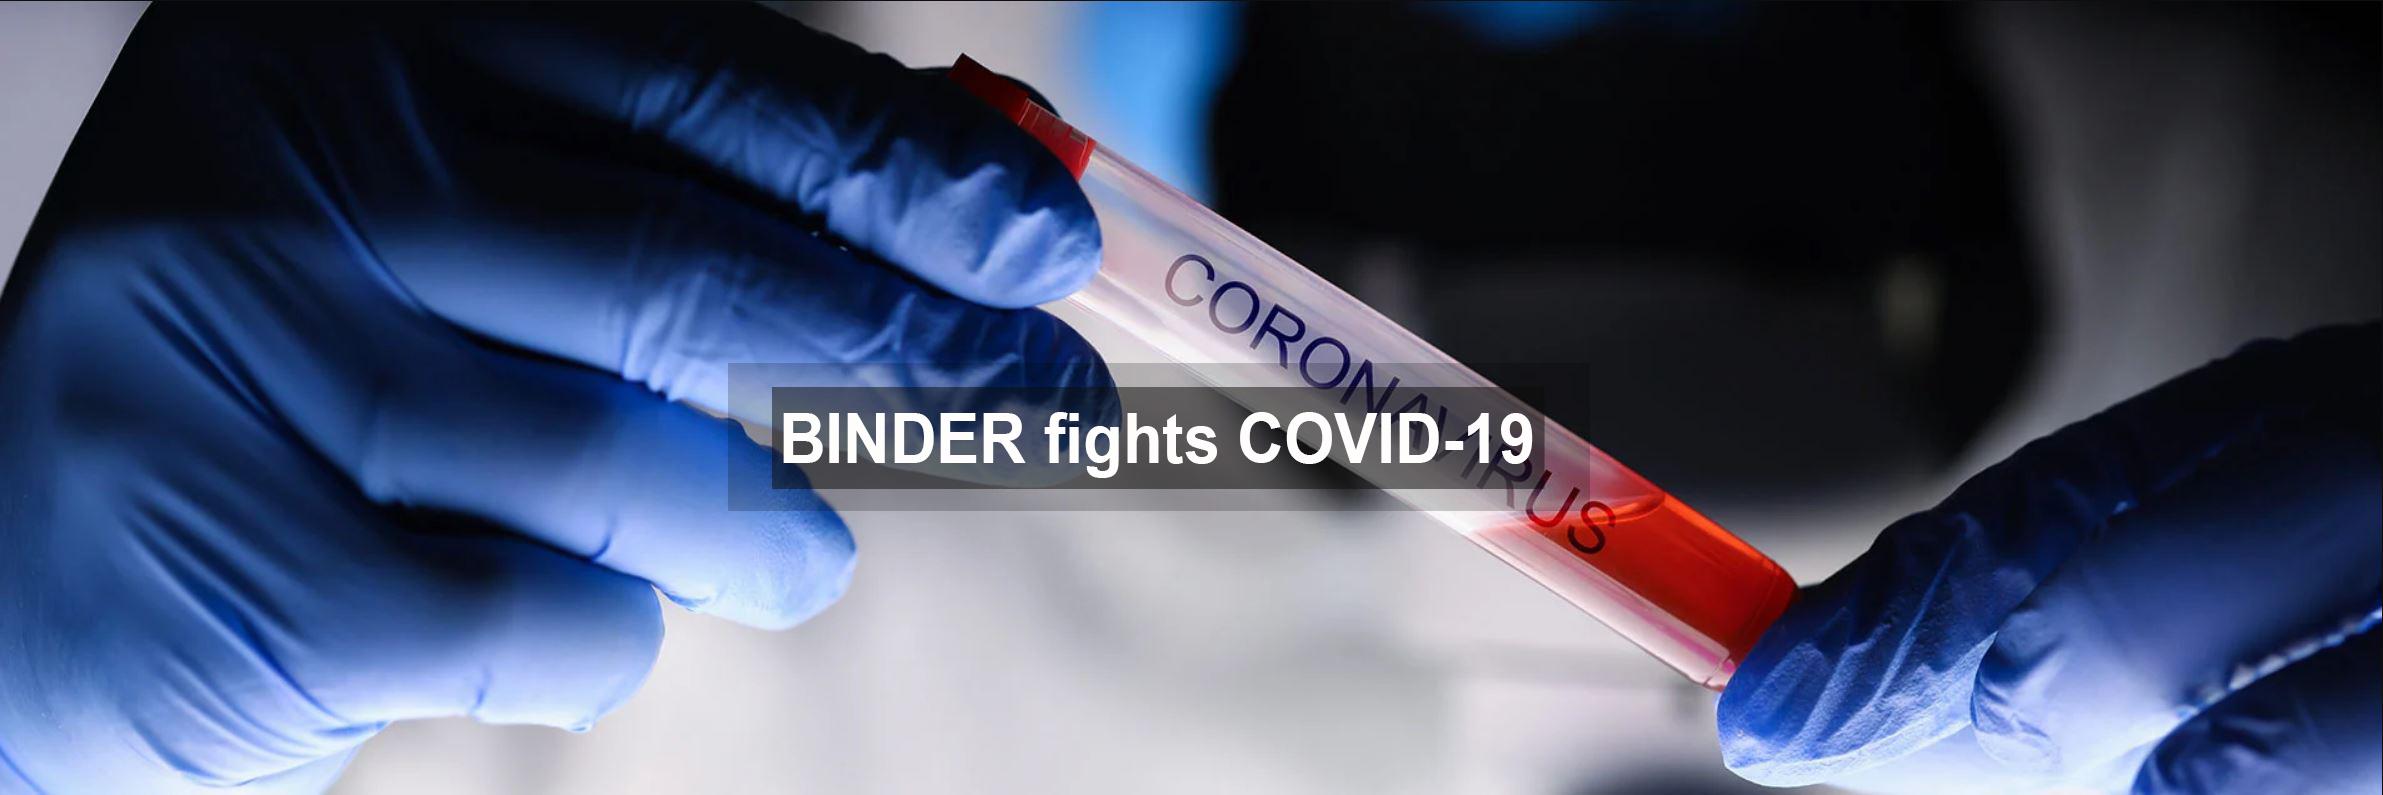 Tủ ấm BINDER: Hỗ trợ nghiên cứu Vac-xin ngừa dịch bệnh Covid-19